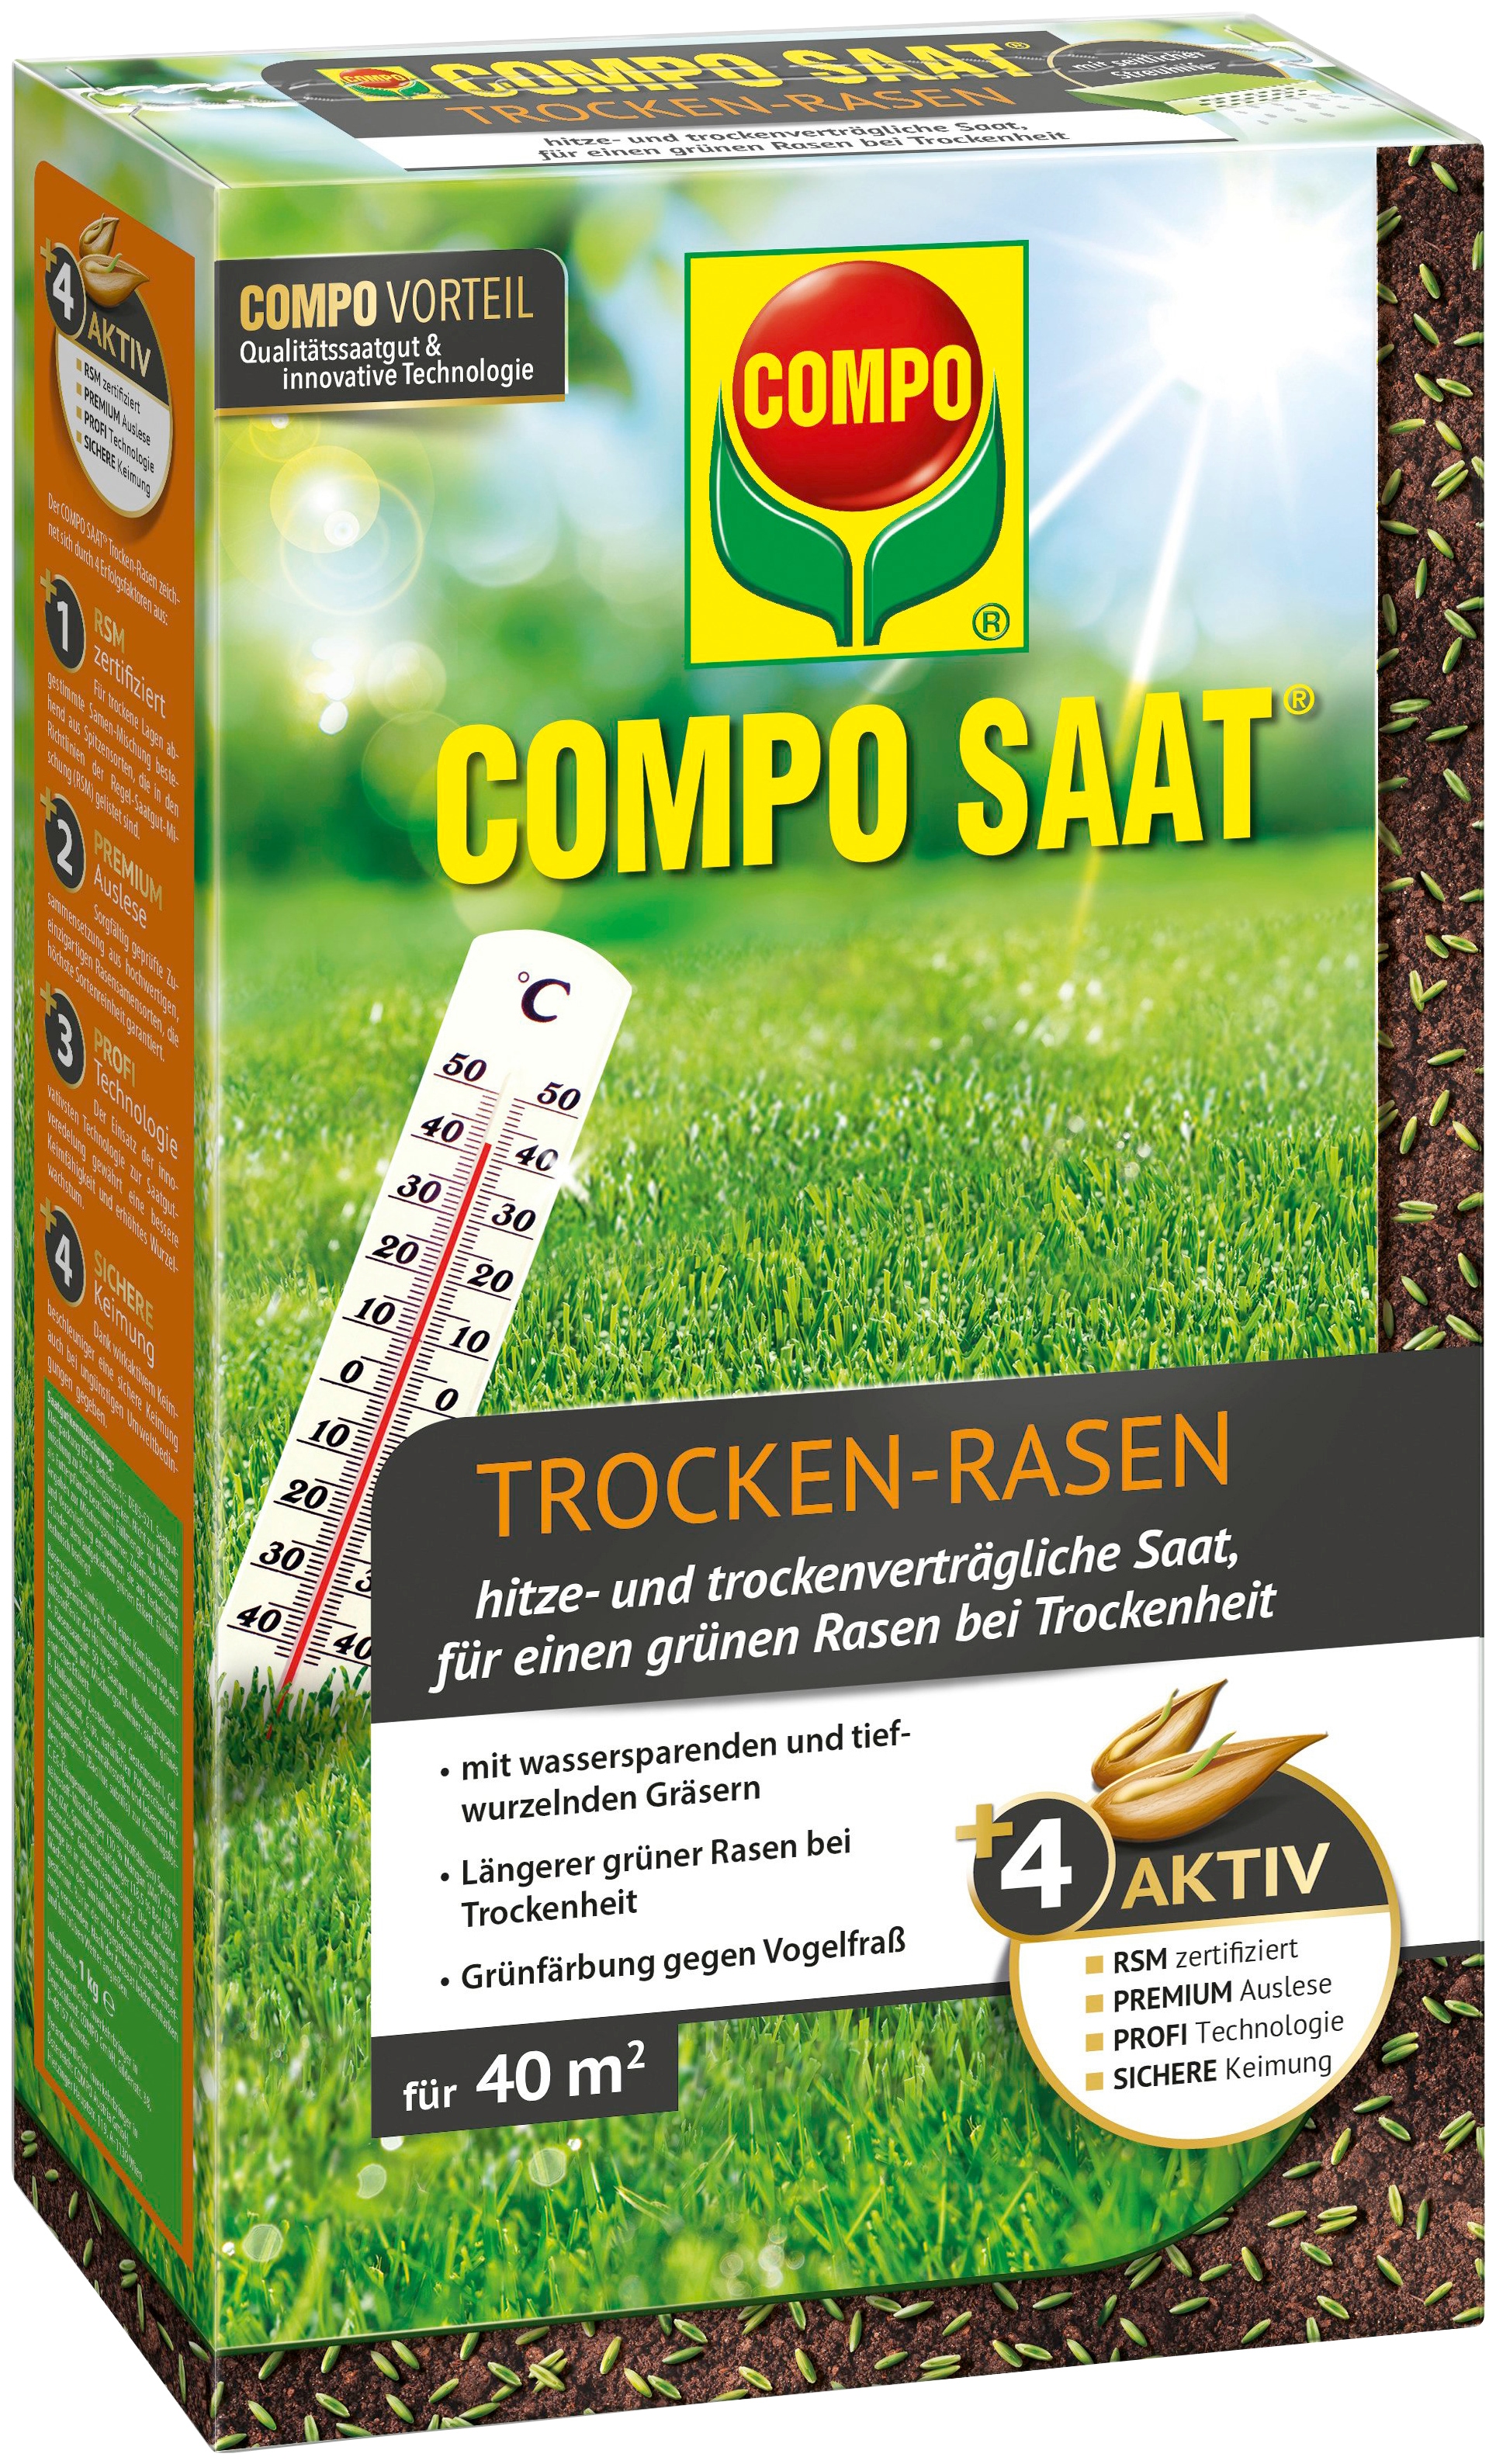 Compo Rasensamen »COMPO SAAT®«, Trocken-Rasen, 1 kg, für 40 m²